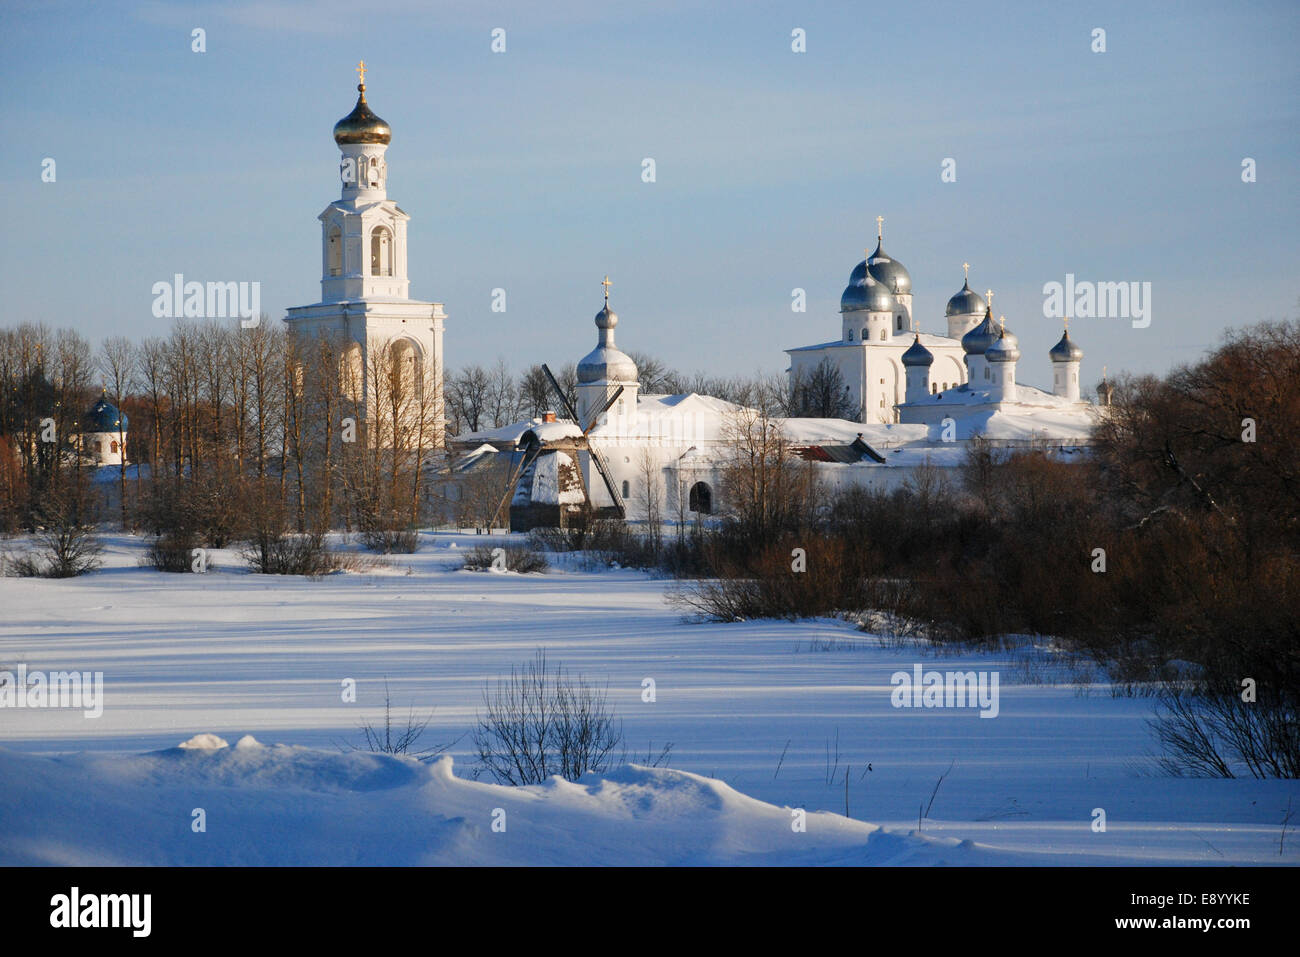 Kloster St. George der russisch orthodoxen Kirche. Befindet sich km 5 von Weliki Nowgorod am Ufer des Wolchow in der Nähe Stockfoto